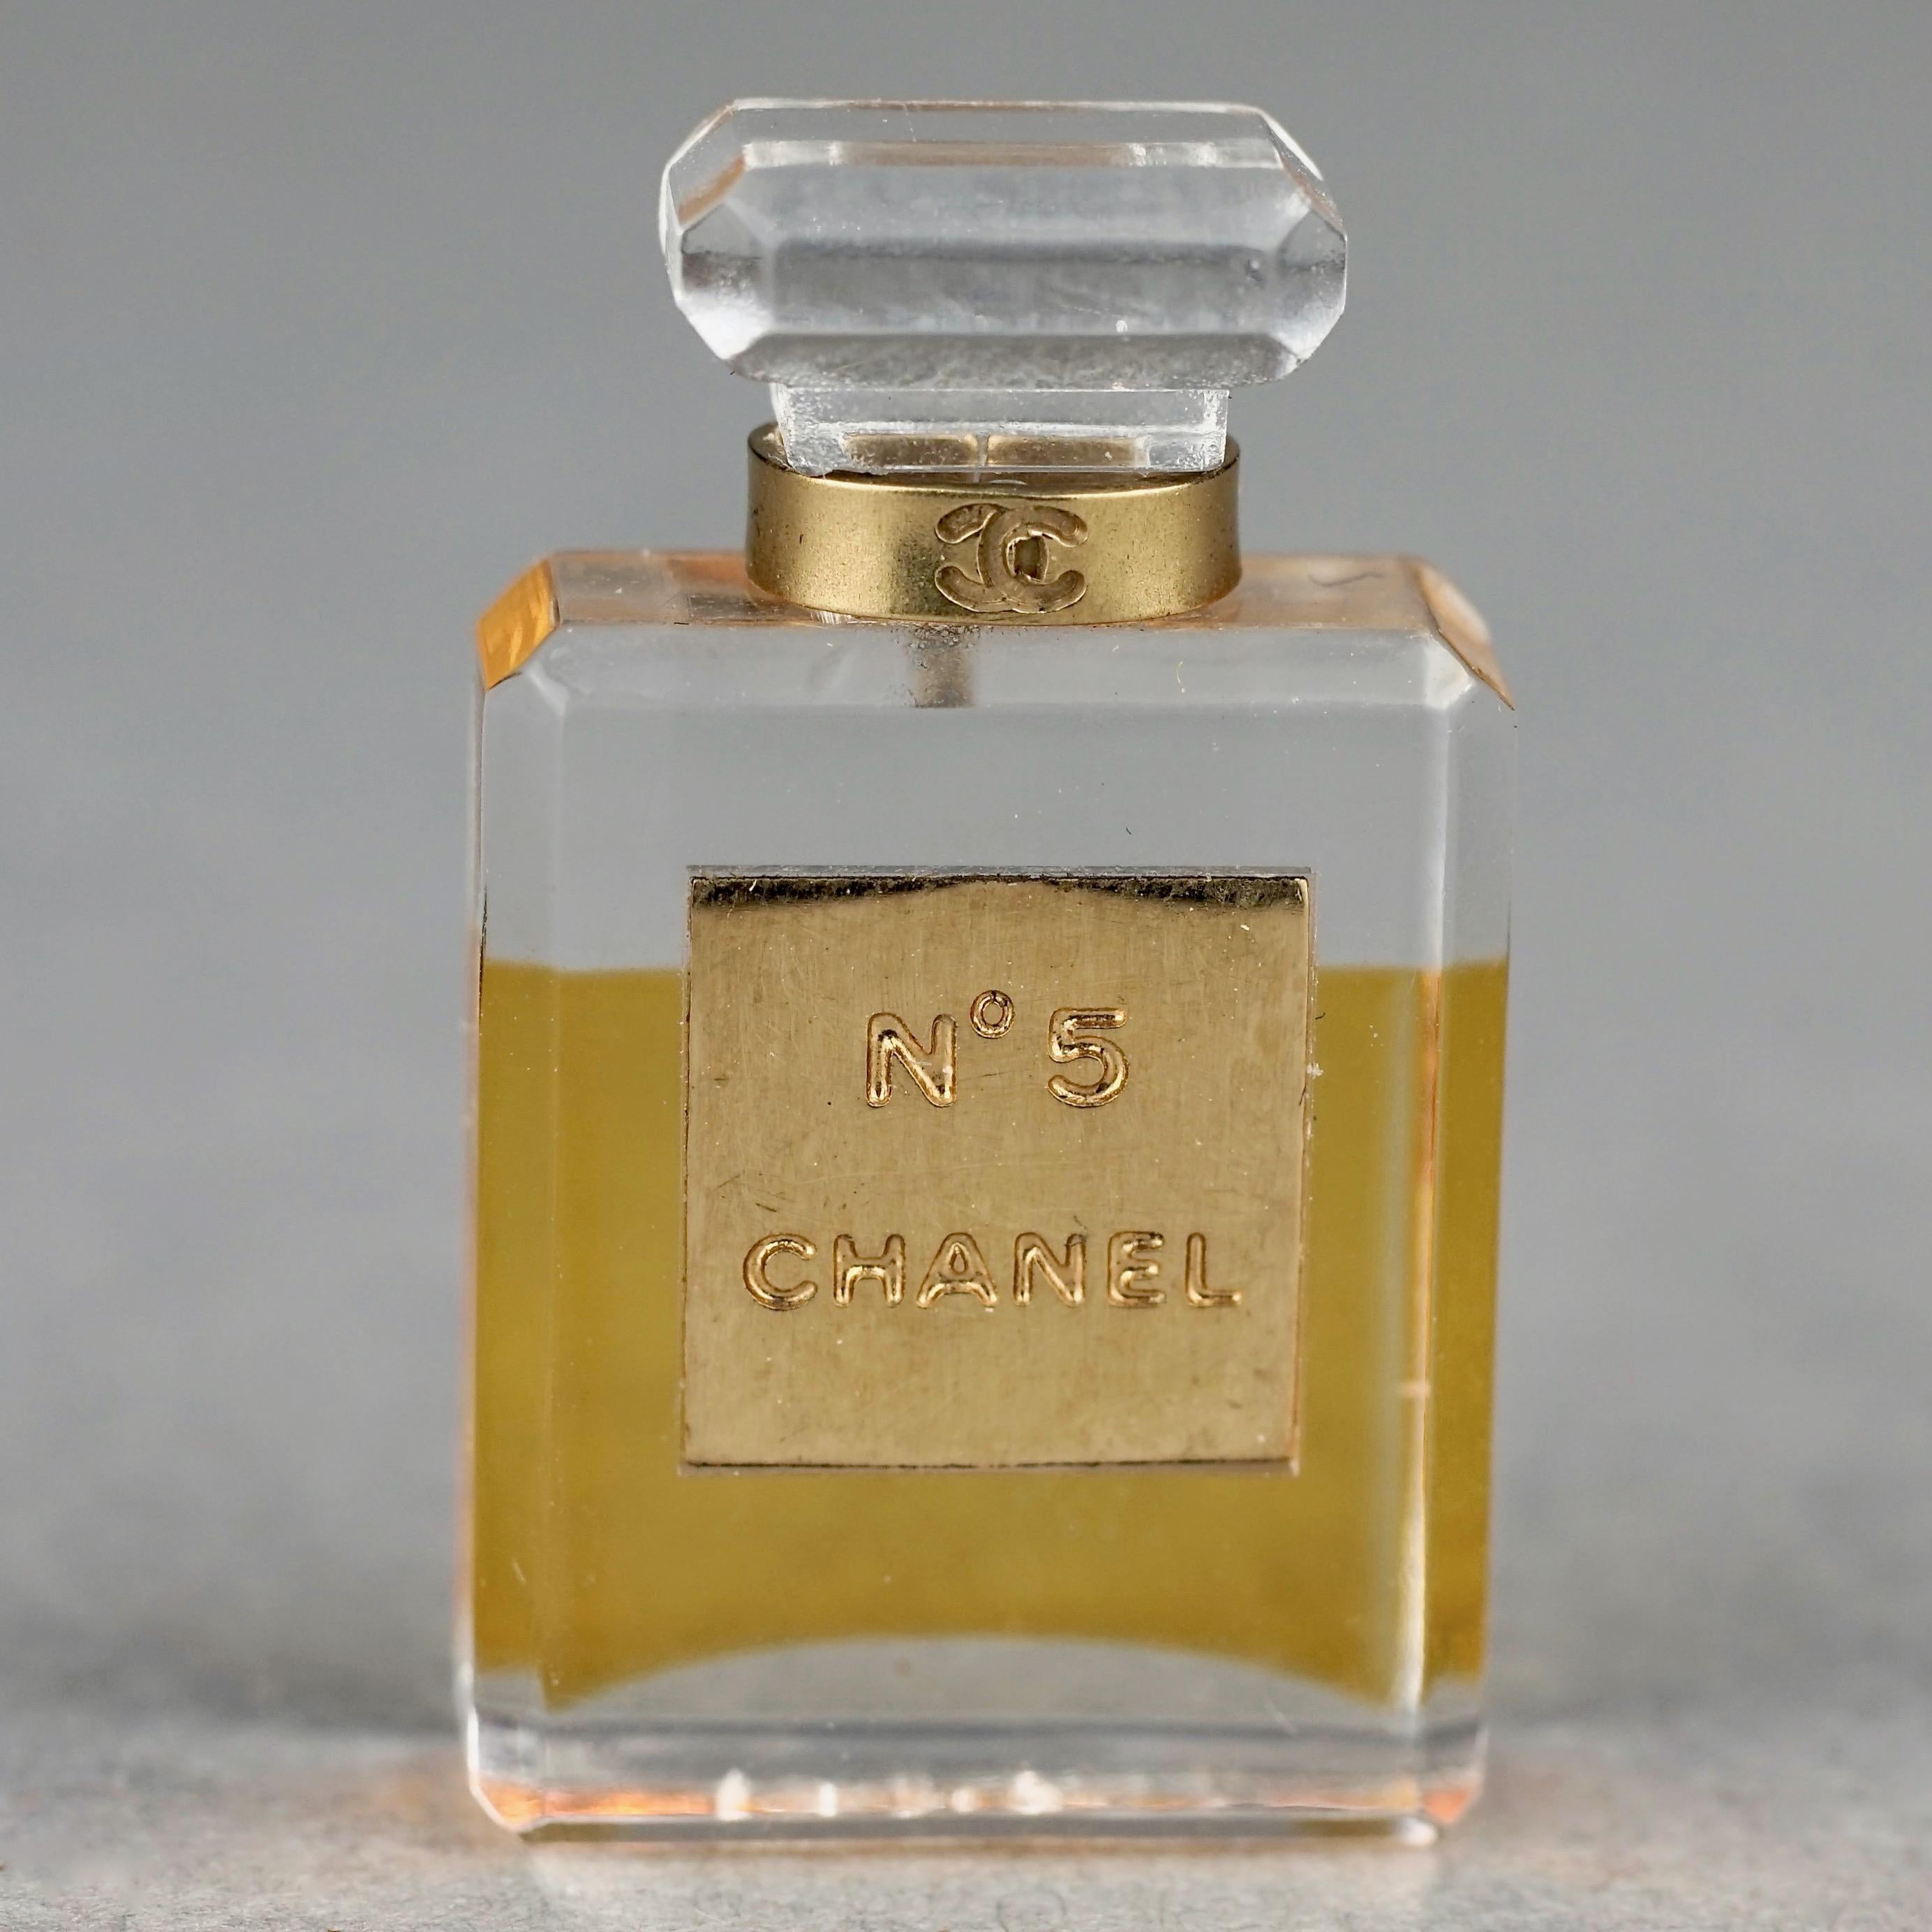 Vintage CHANEL No.5 Miniature Perfume Bottle Brooch

Mesures : 
Hauteur : 0.98 pouces (2::5 cm)
Largeur : 0.59 pouces (1::5 cm)
Épaisseur : 0.27 pouces (0::7 cm)

Caractéristiques : 
- 100% Authentique CHANEL. 
- Célèbre flacon de parfum miniature